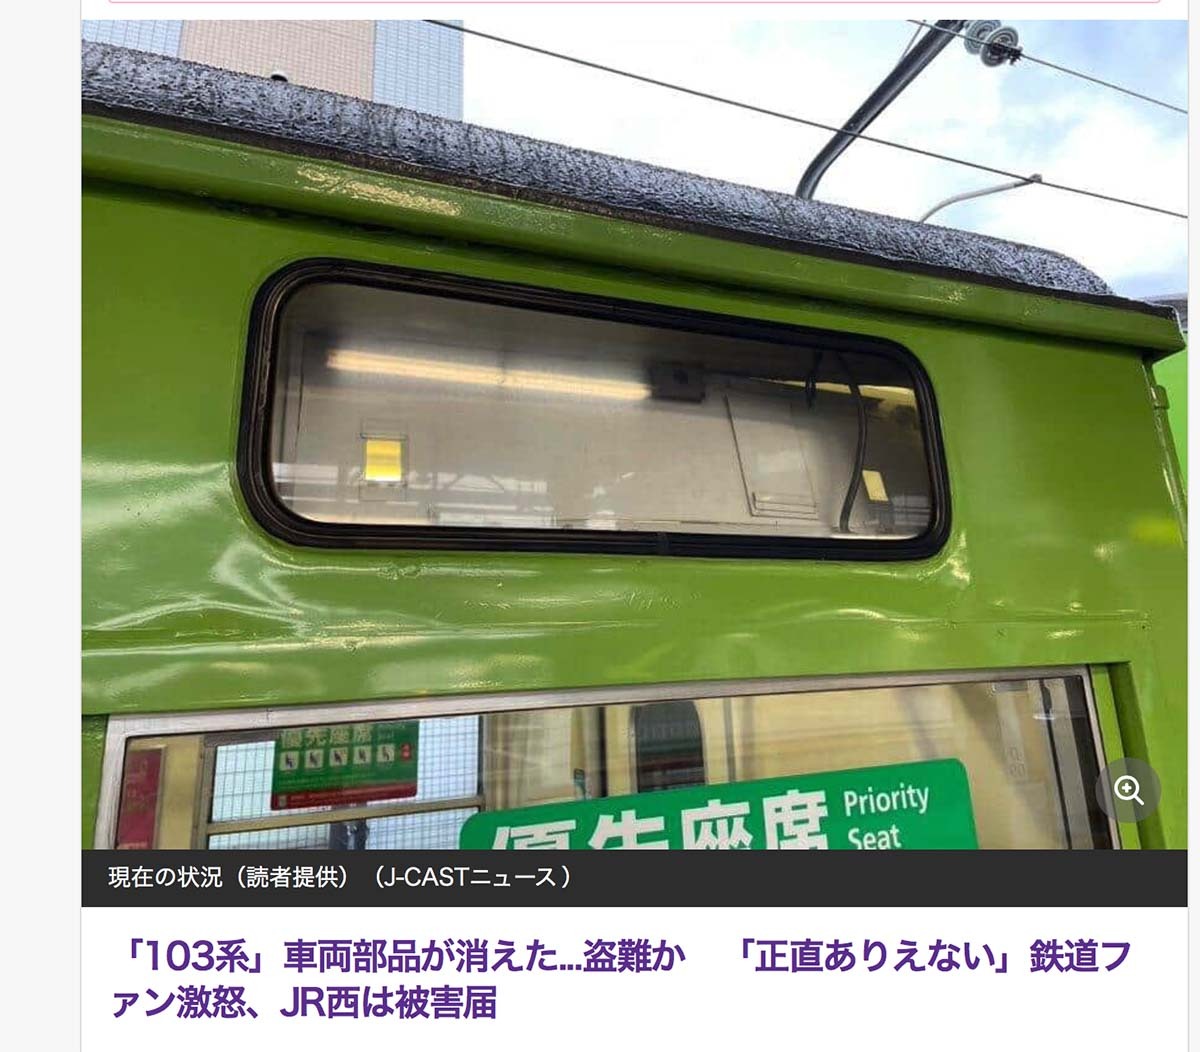 奈良線103系の方向幕装置盗難: Terapro@Direct